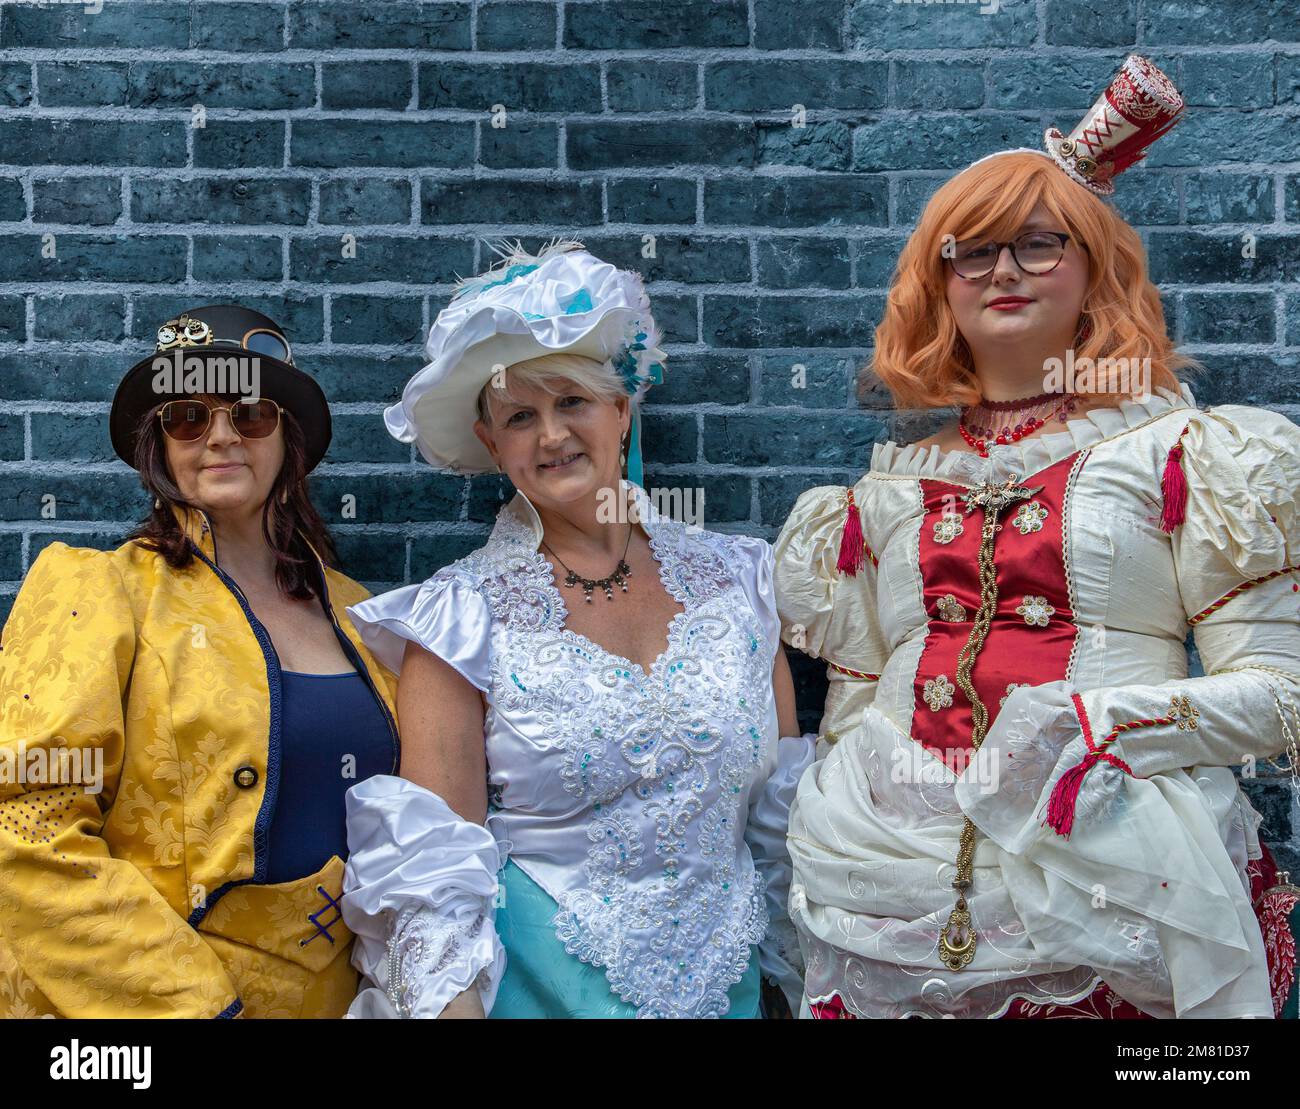 Portrait de trois femmes, des femmes steampunks, souriant en se tenant près d'un mur. Habillée en costume d'époque, vêtements de steampunk. Banque D'Images